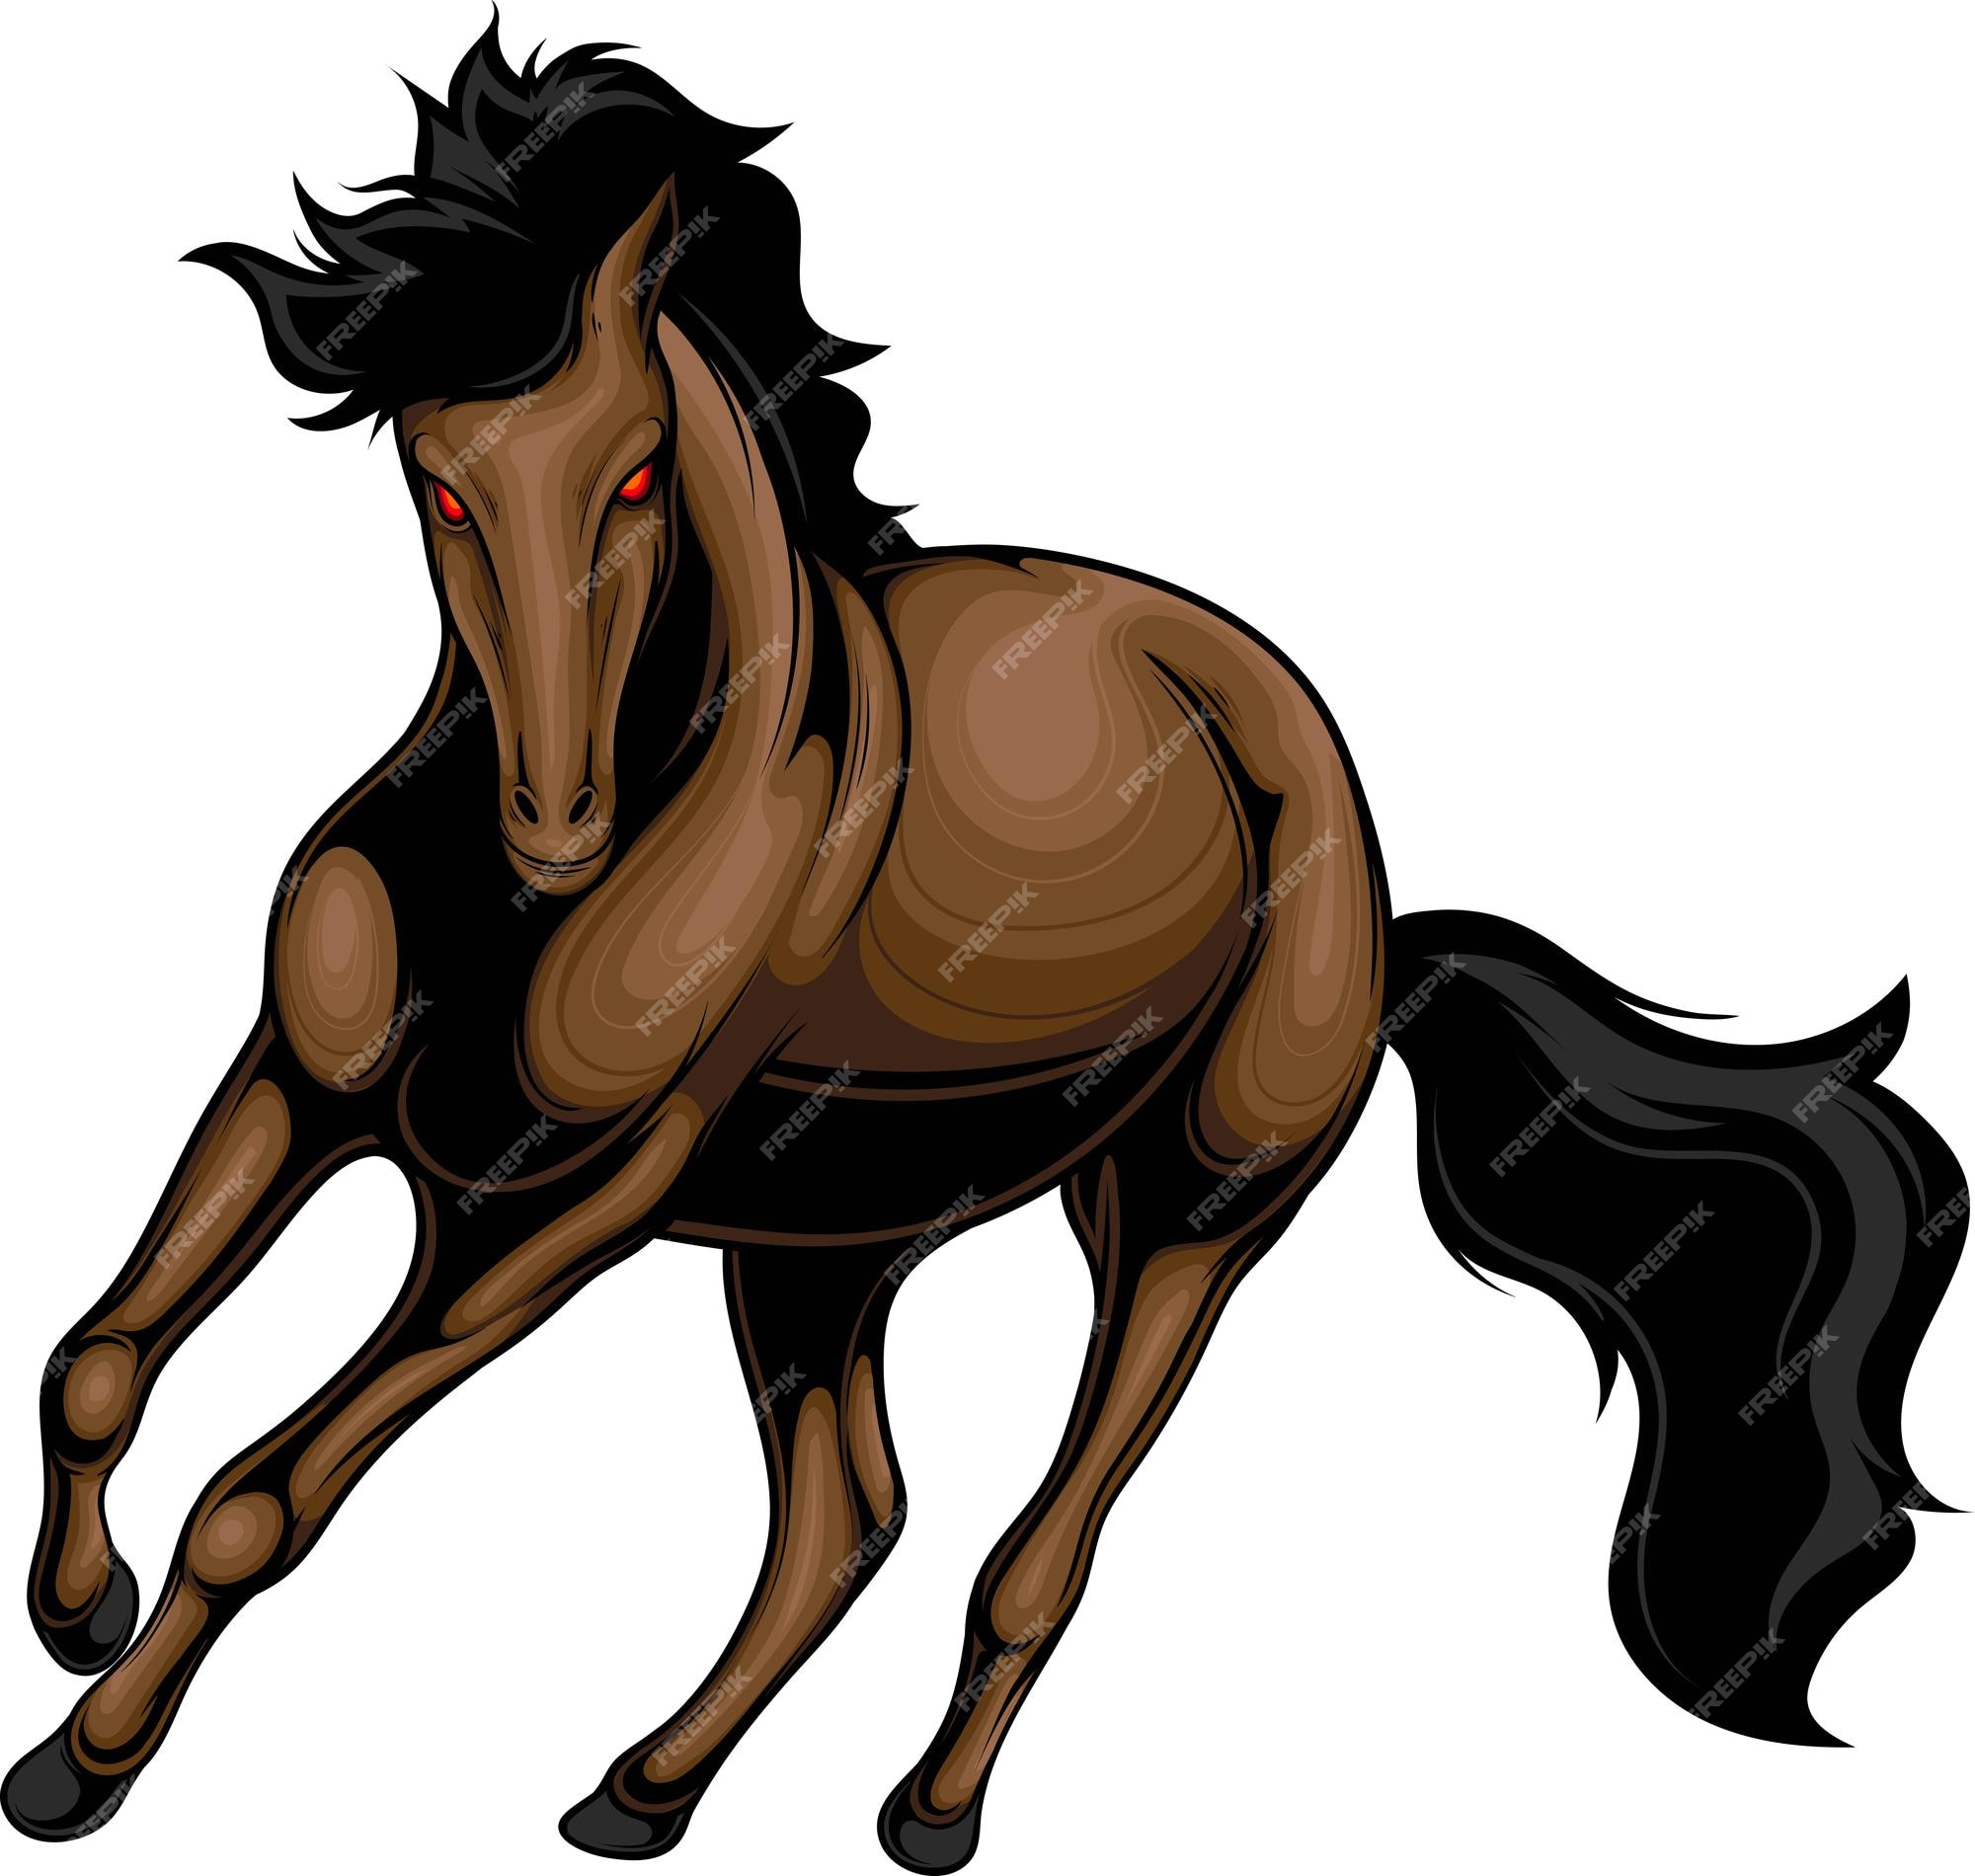 114.100+ Cavalo Ilustração de stock, gráficos vetoriais e clipart  royalty-free - iStock